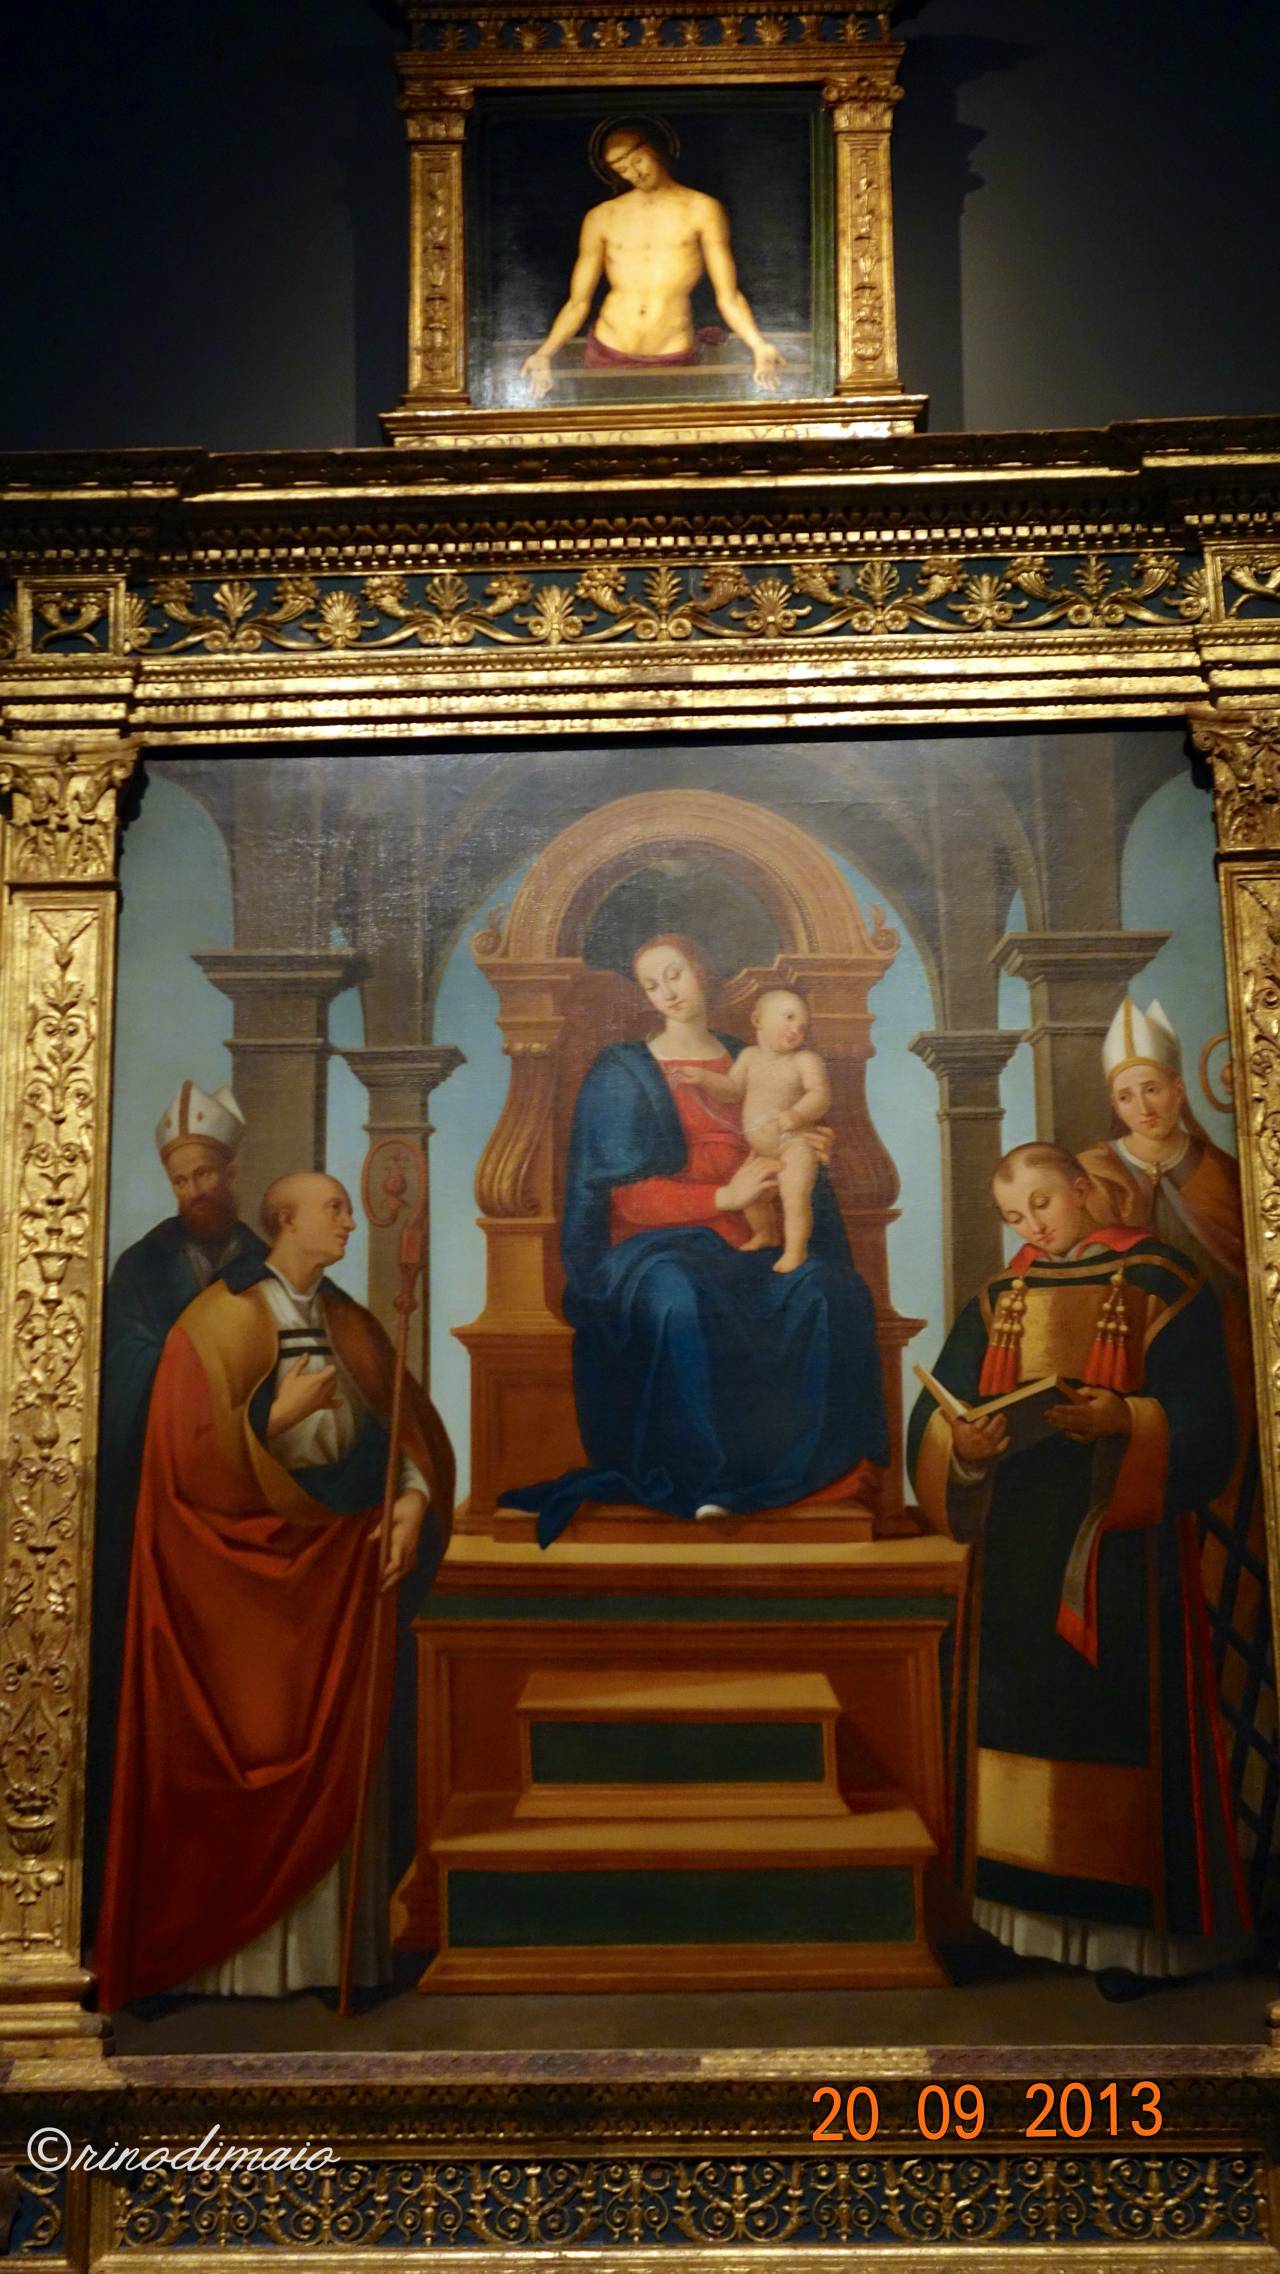 ©rinodimaio-Rotary visita mostra Perugino 20 settembre 2013-n.11